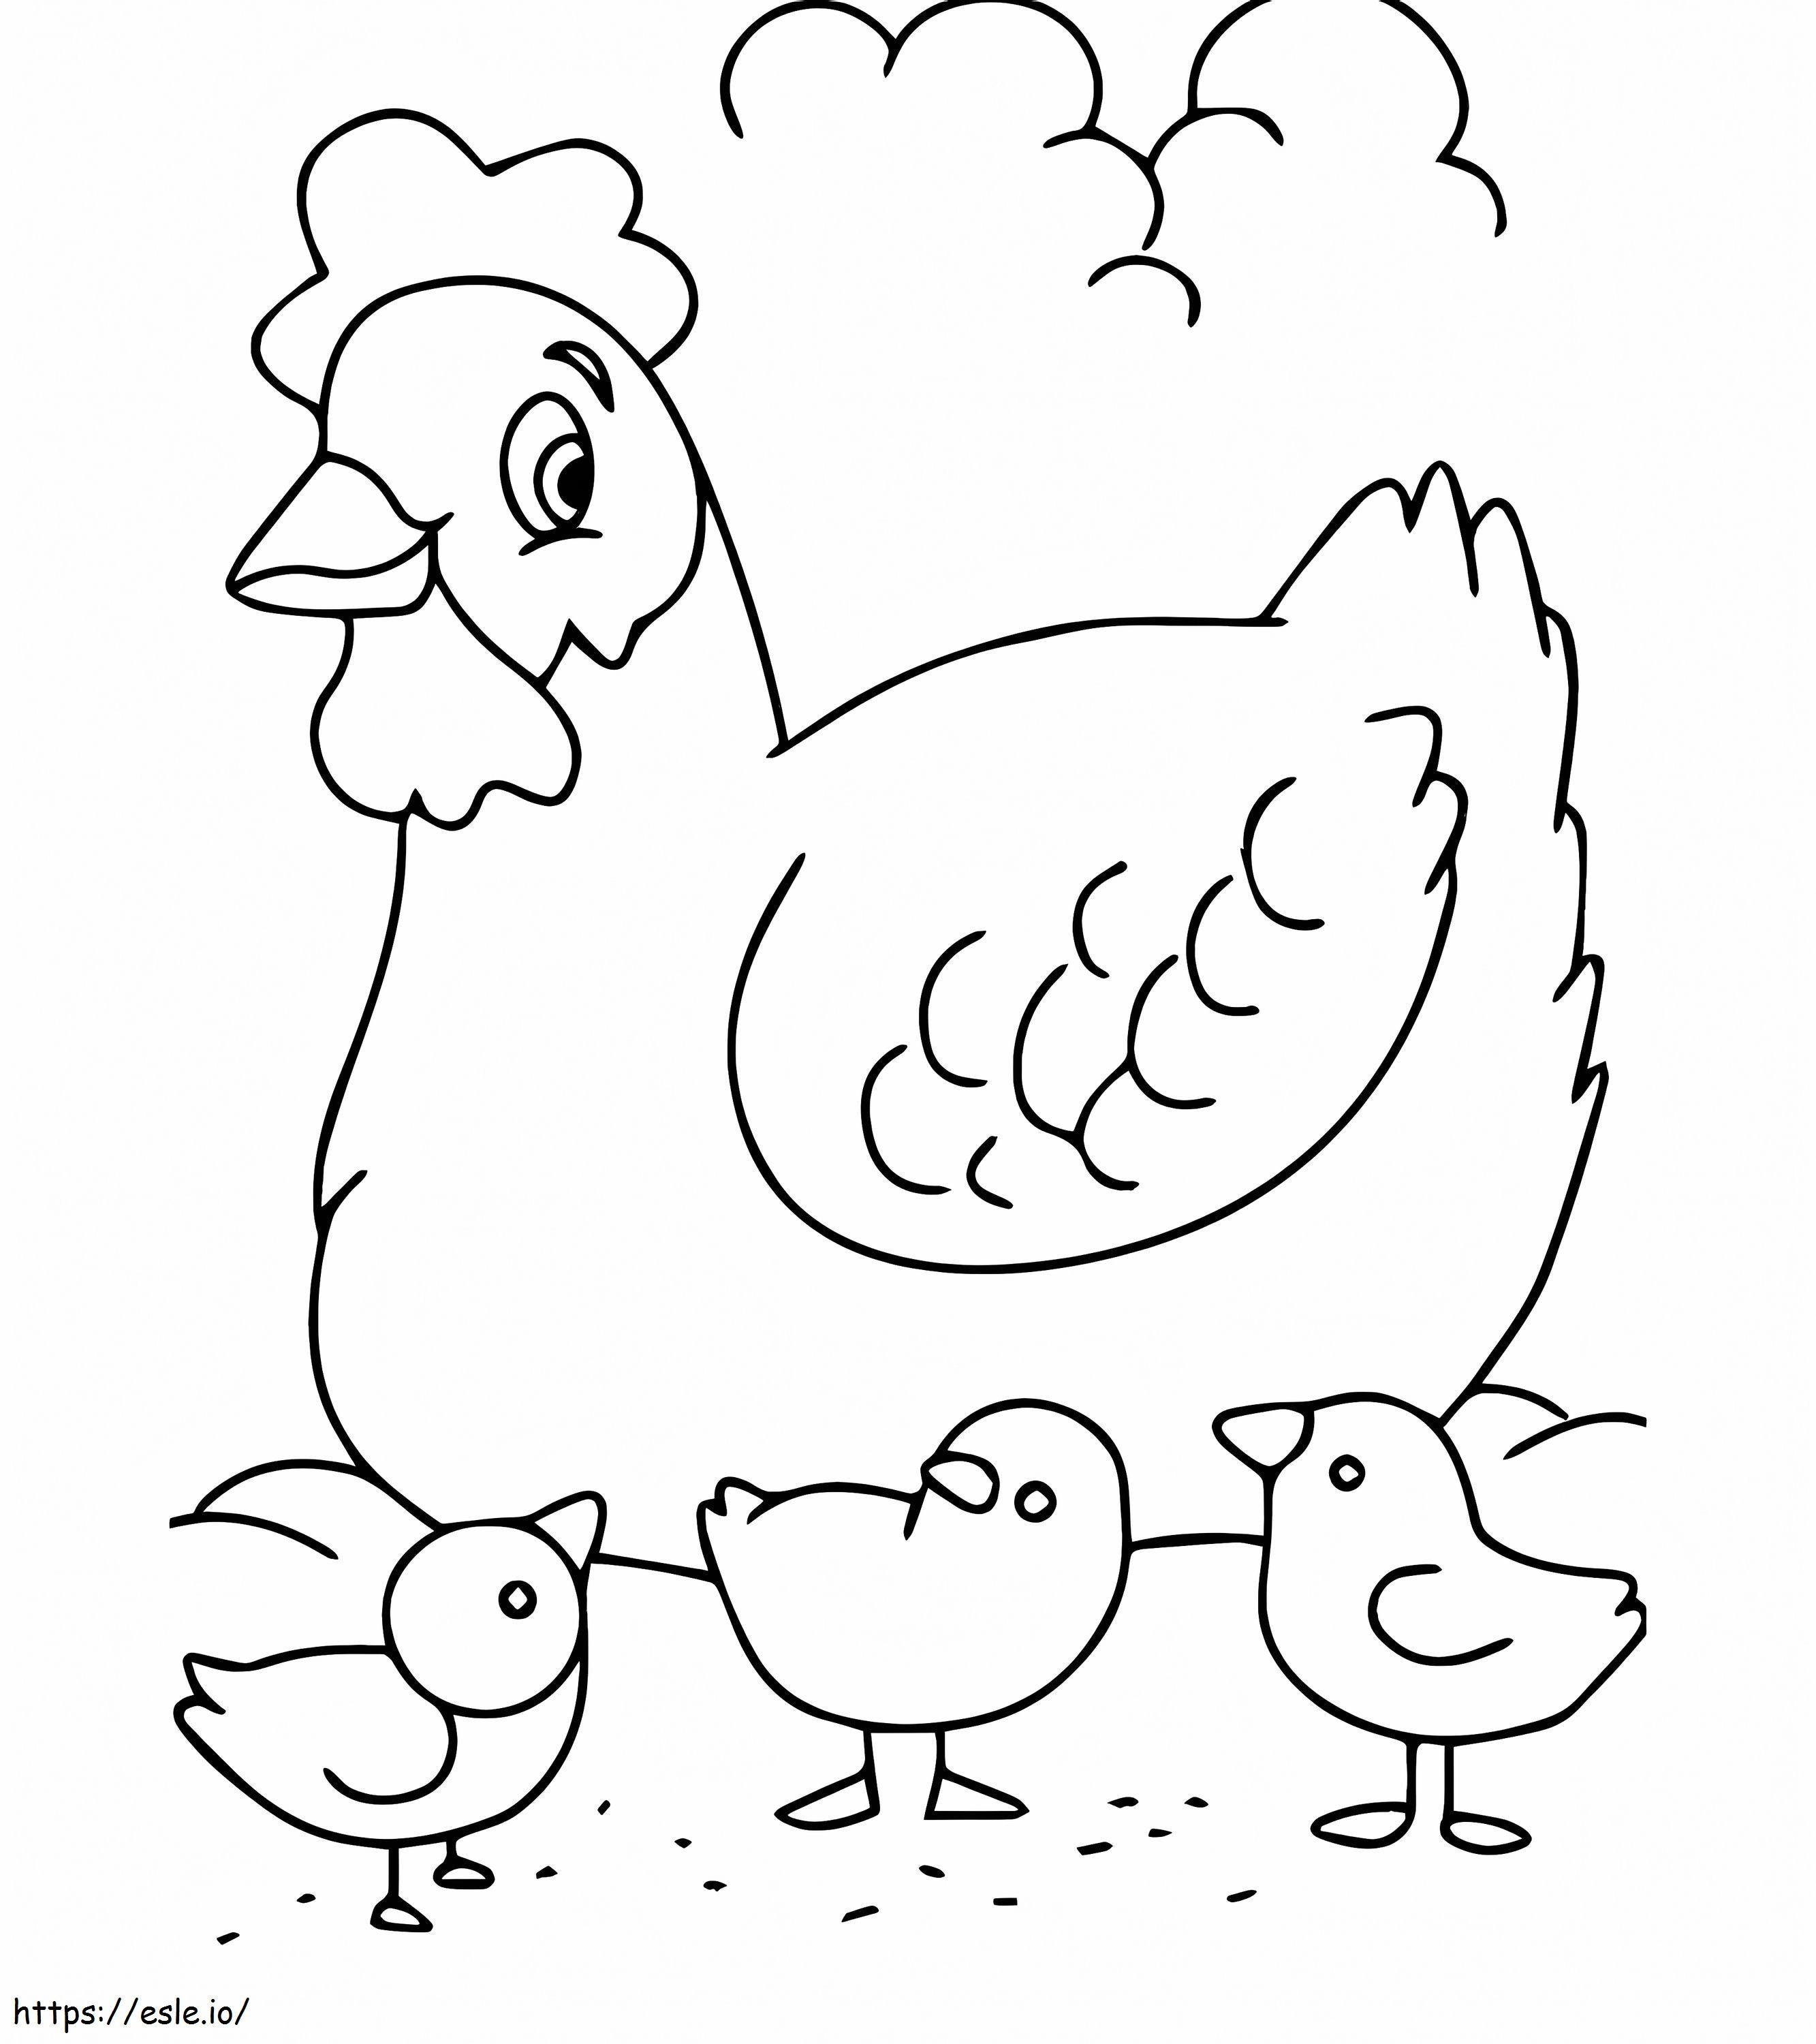 Pollo di famiglia da colorare